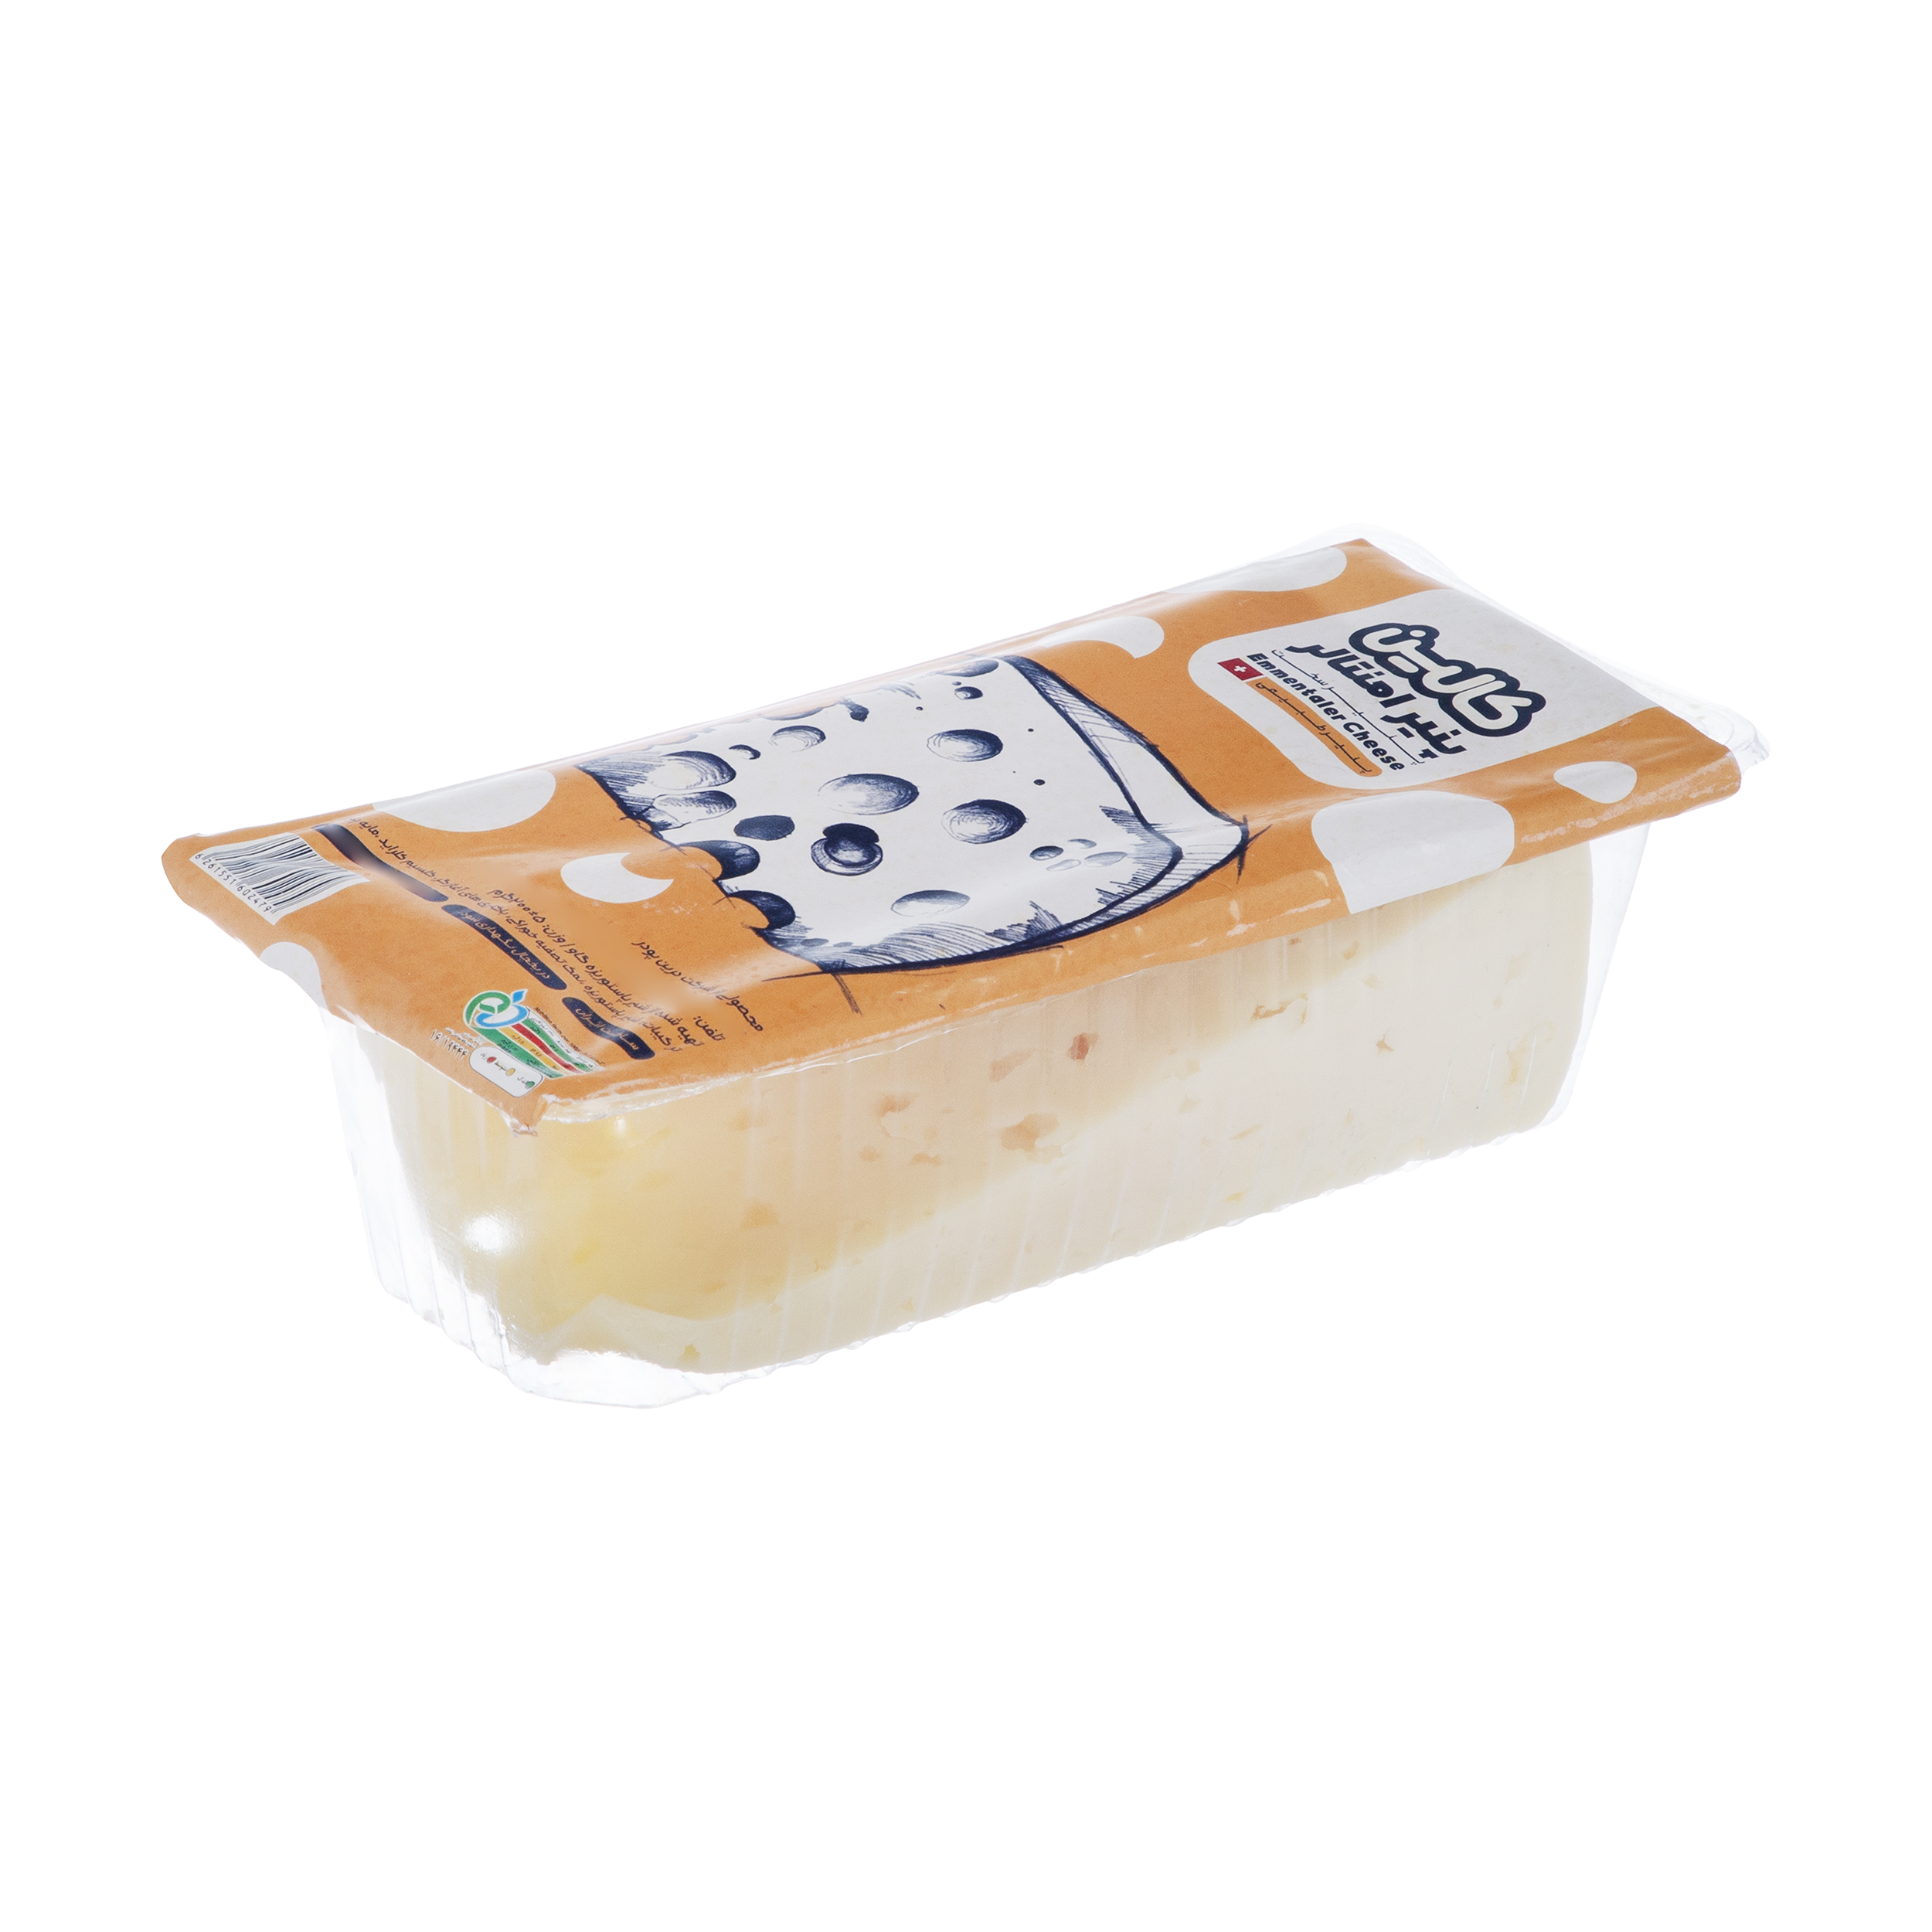 پنیر امنتالر کالین - 200 گرم 